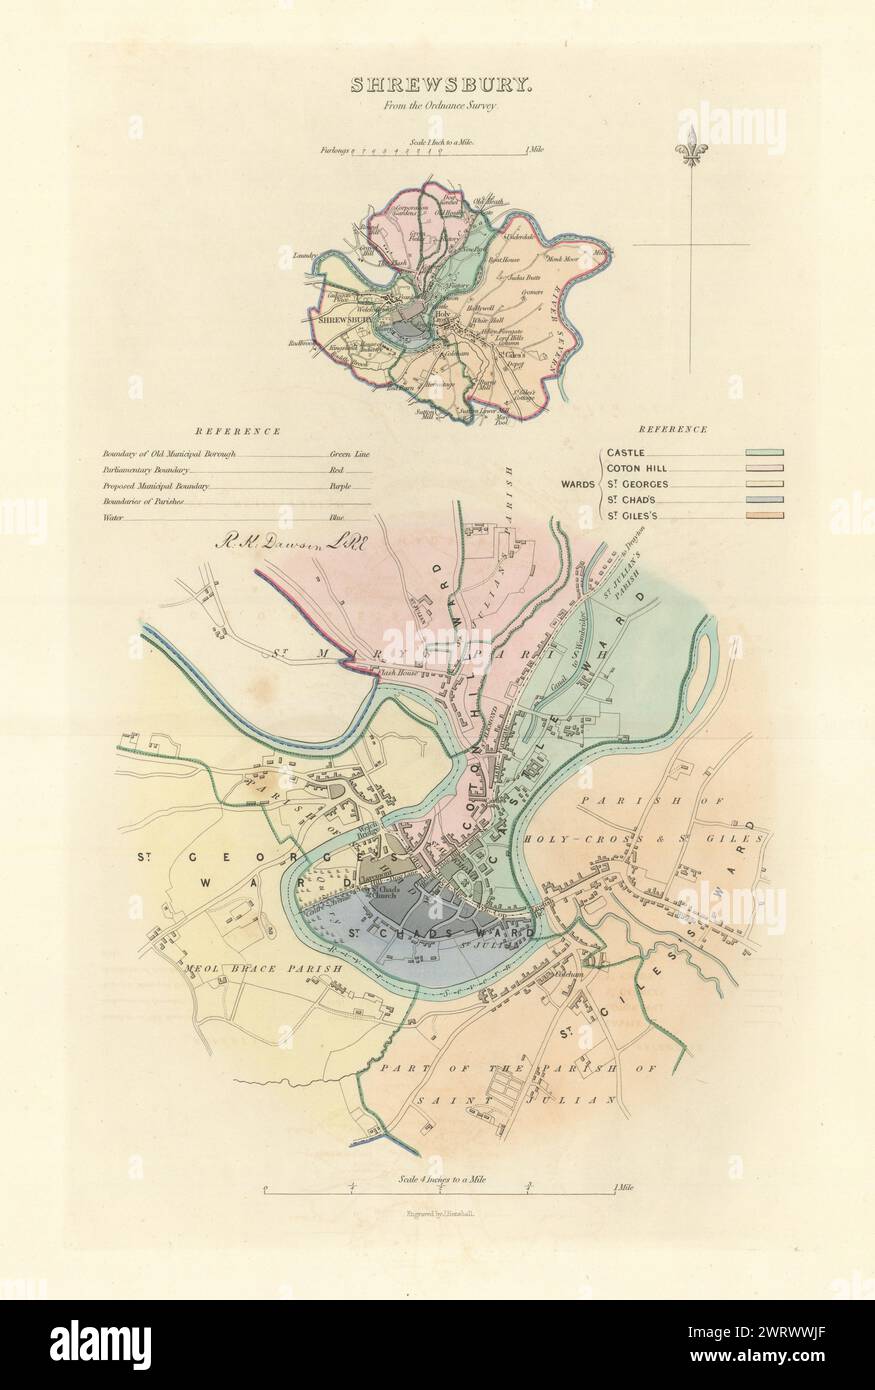 SHREWSBURY Gemeinde/Stadt planen. Grenzkommission. Shropshire. DAWSON 1837 Karte Stockfoto